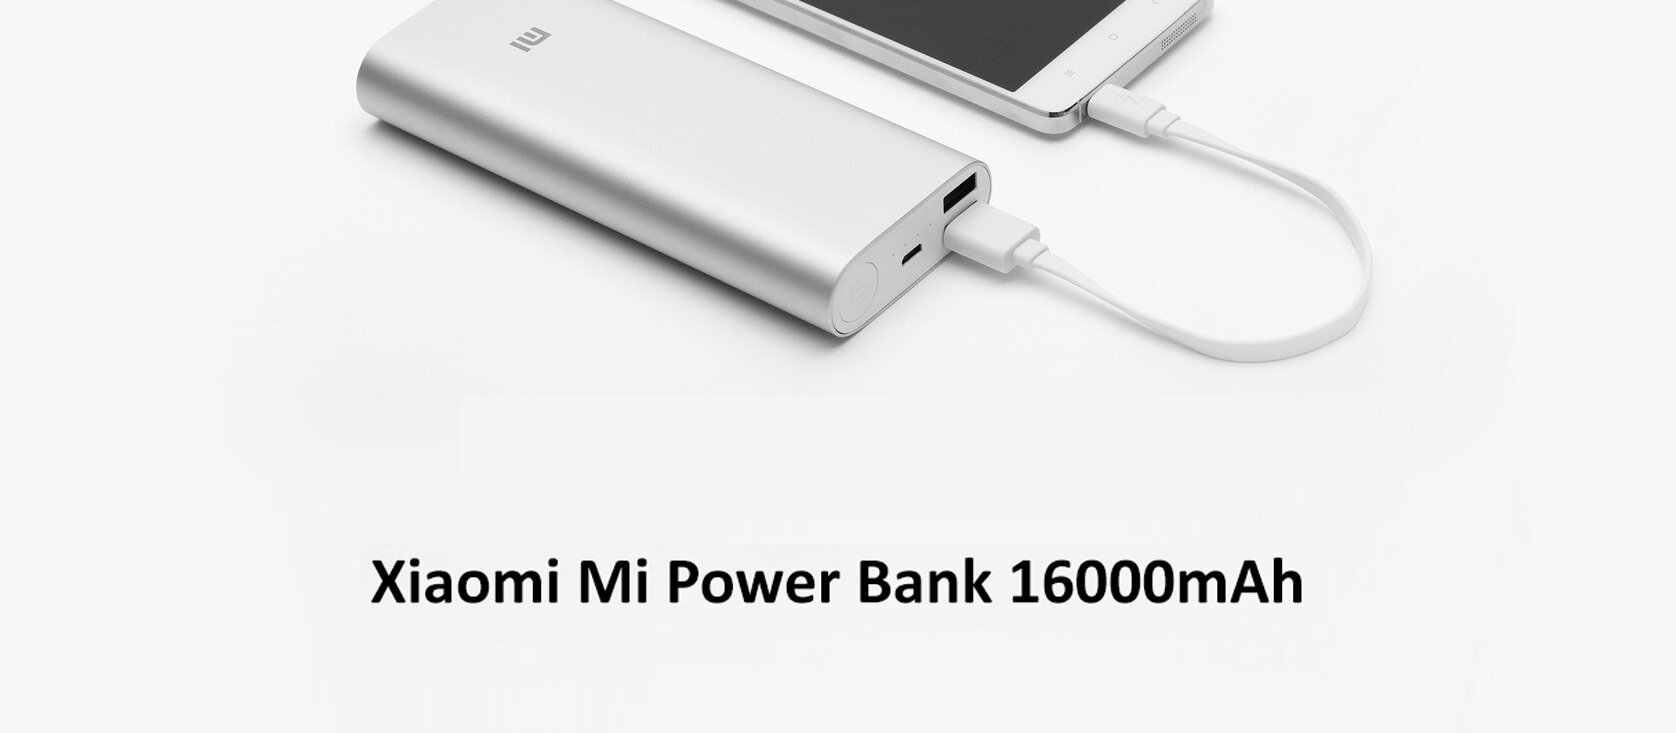 Xiaomi Mi Power Bank 16000mAh